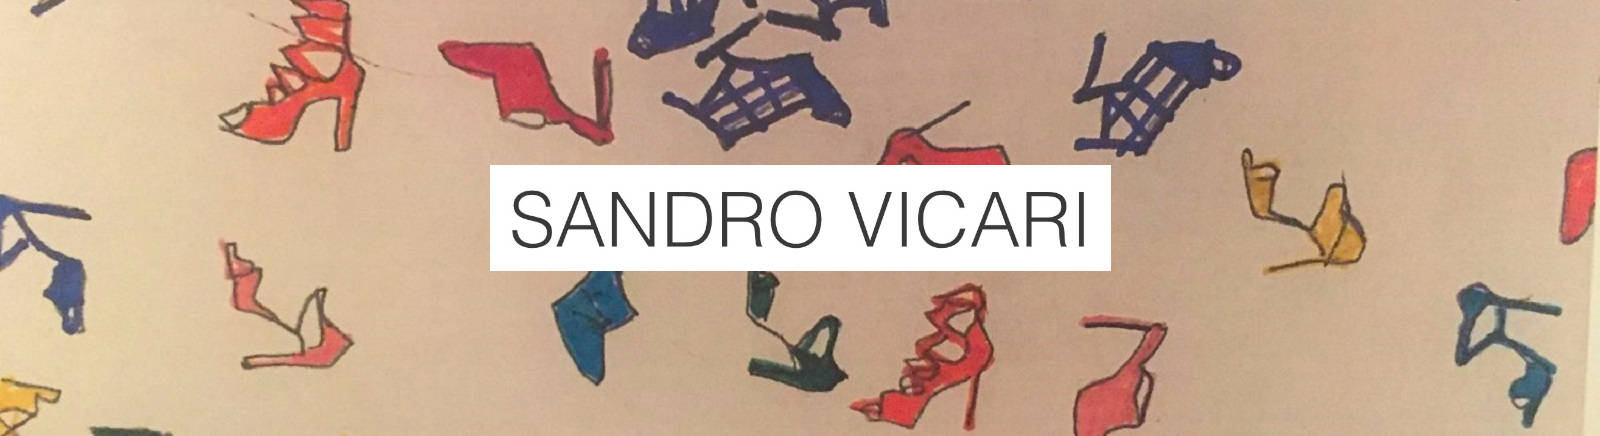 Sandro Vicari Brautschuhe für Damen im Online-Shop von GISY kaufen